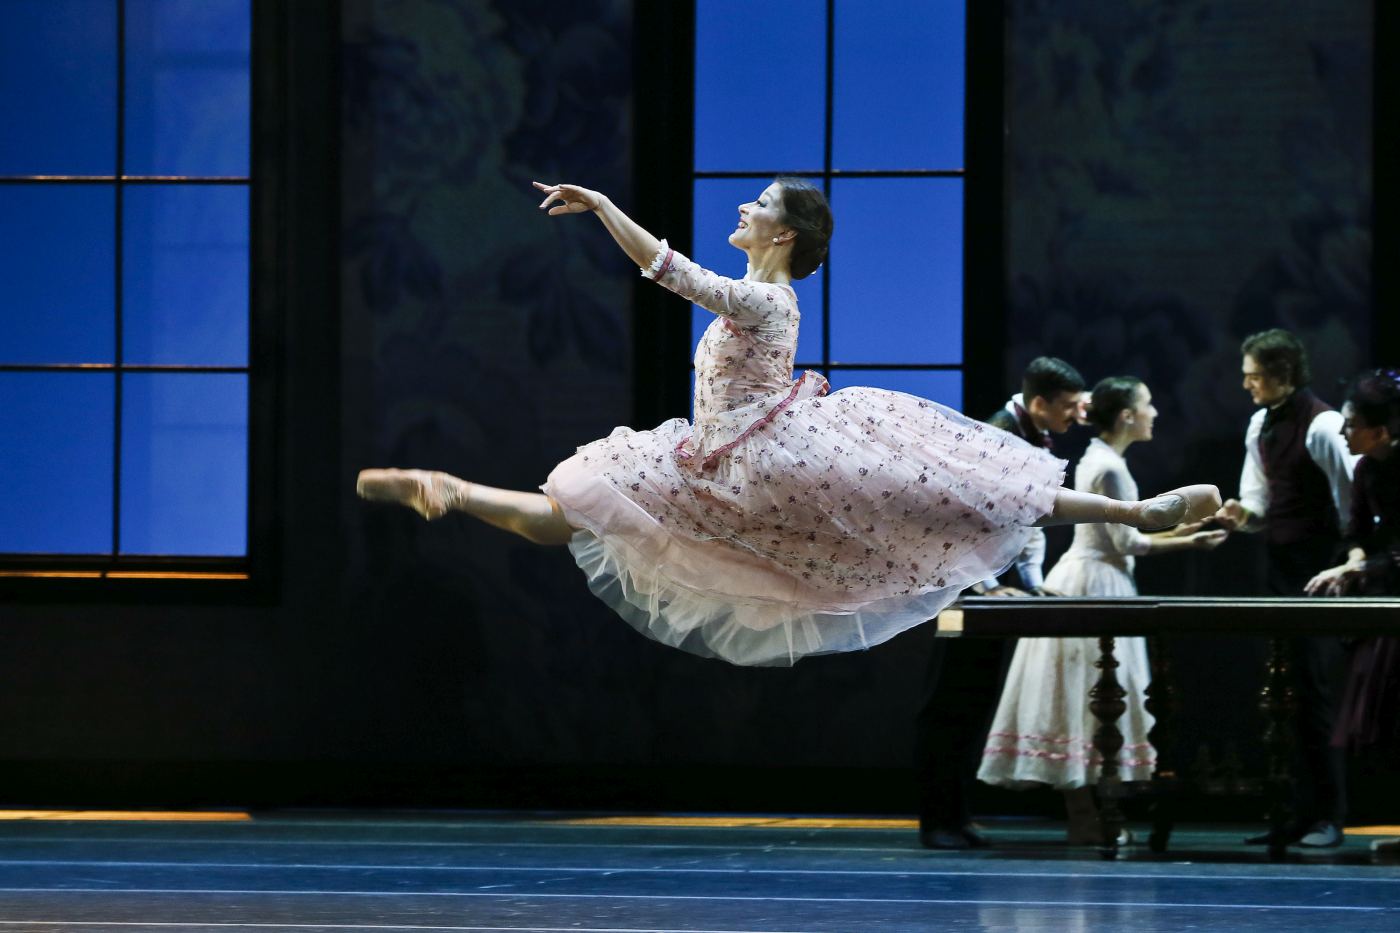 3. B.Bemet (Kitty Shcherbatskaya) and ensemble, “Anna Karenina” by Y.Possokhov, The Australian Ballet 2022 © J.Busby